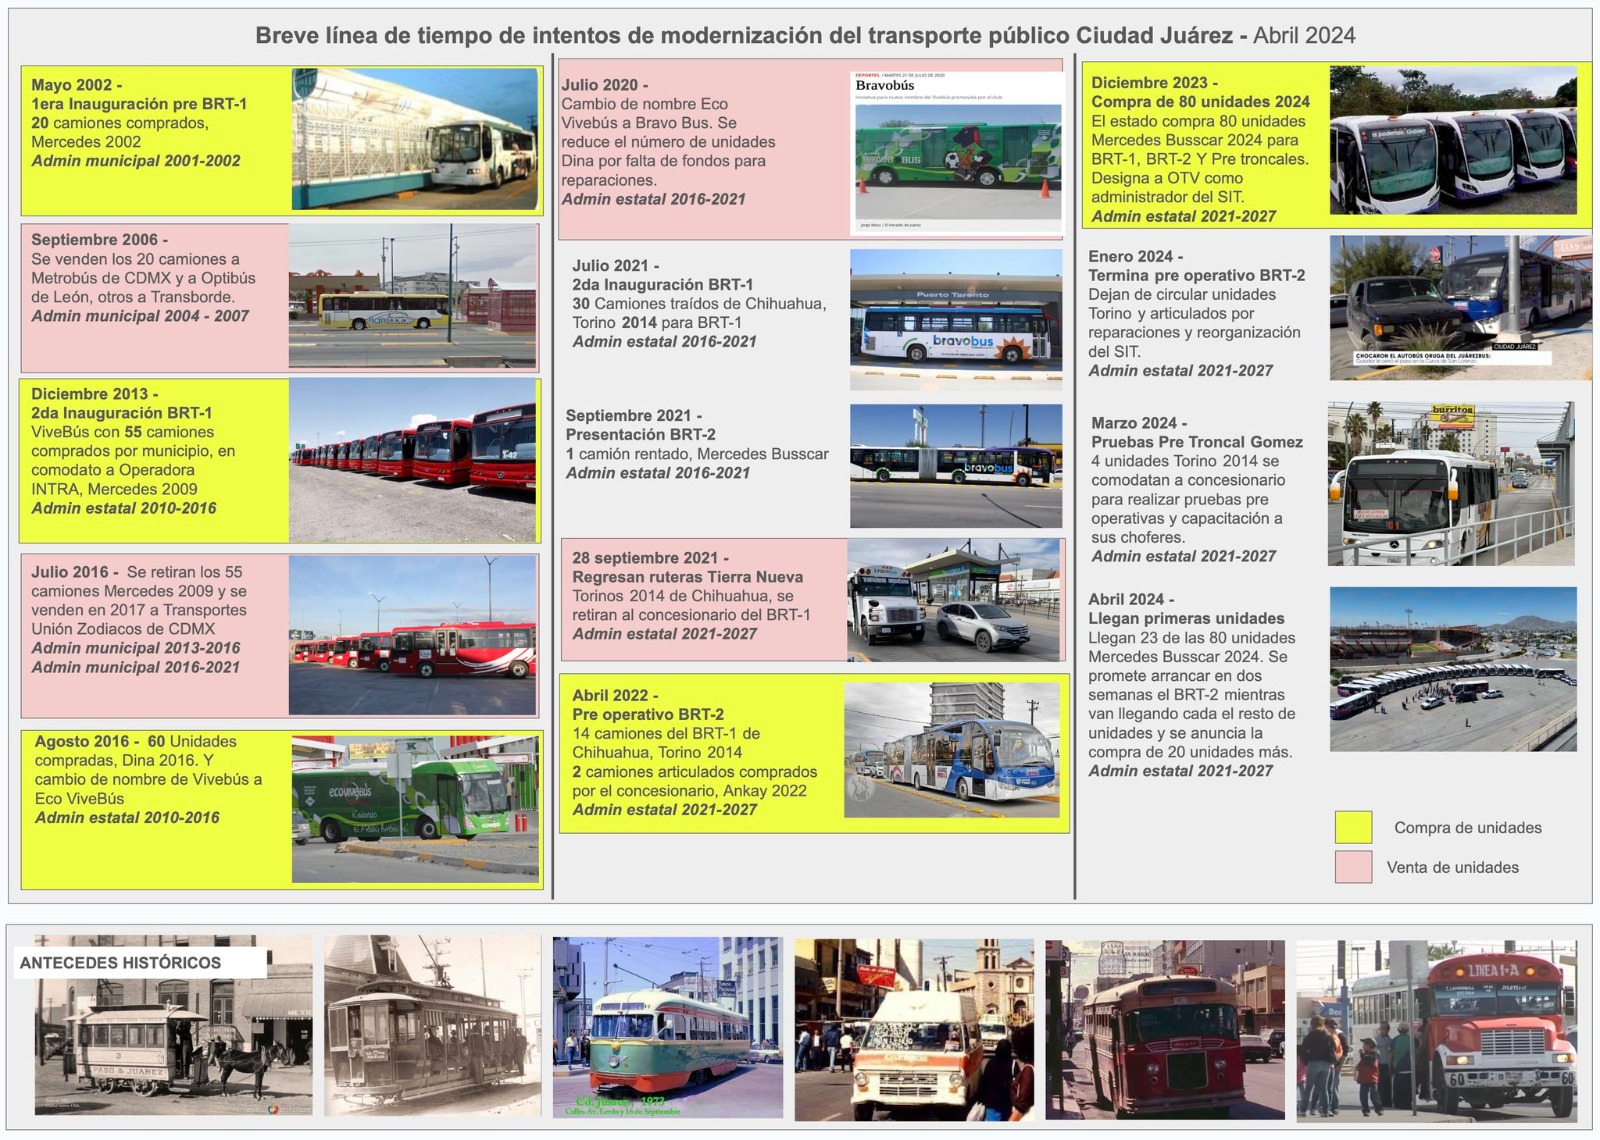 Trayectoria de Modernización del Transporte Público en Ciudad Juárez: Una Mirada Histórica